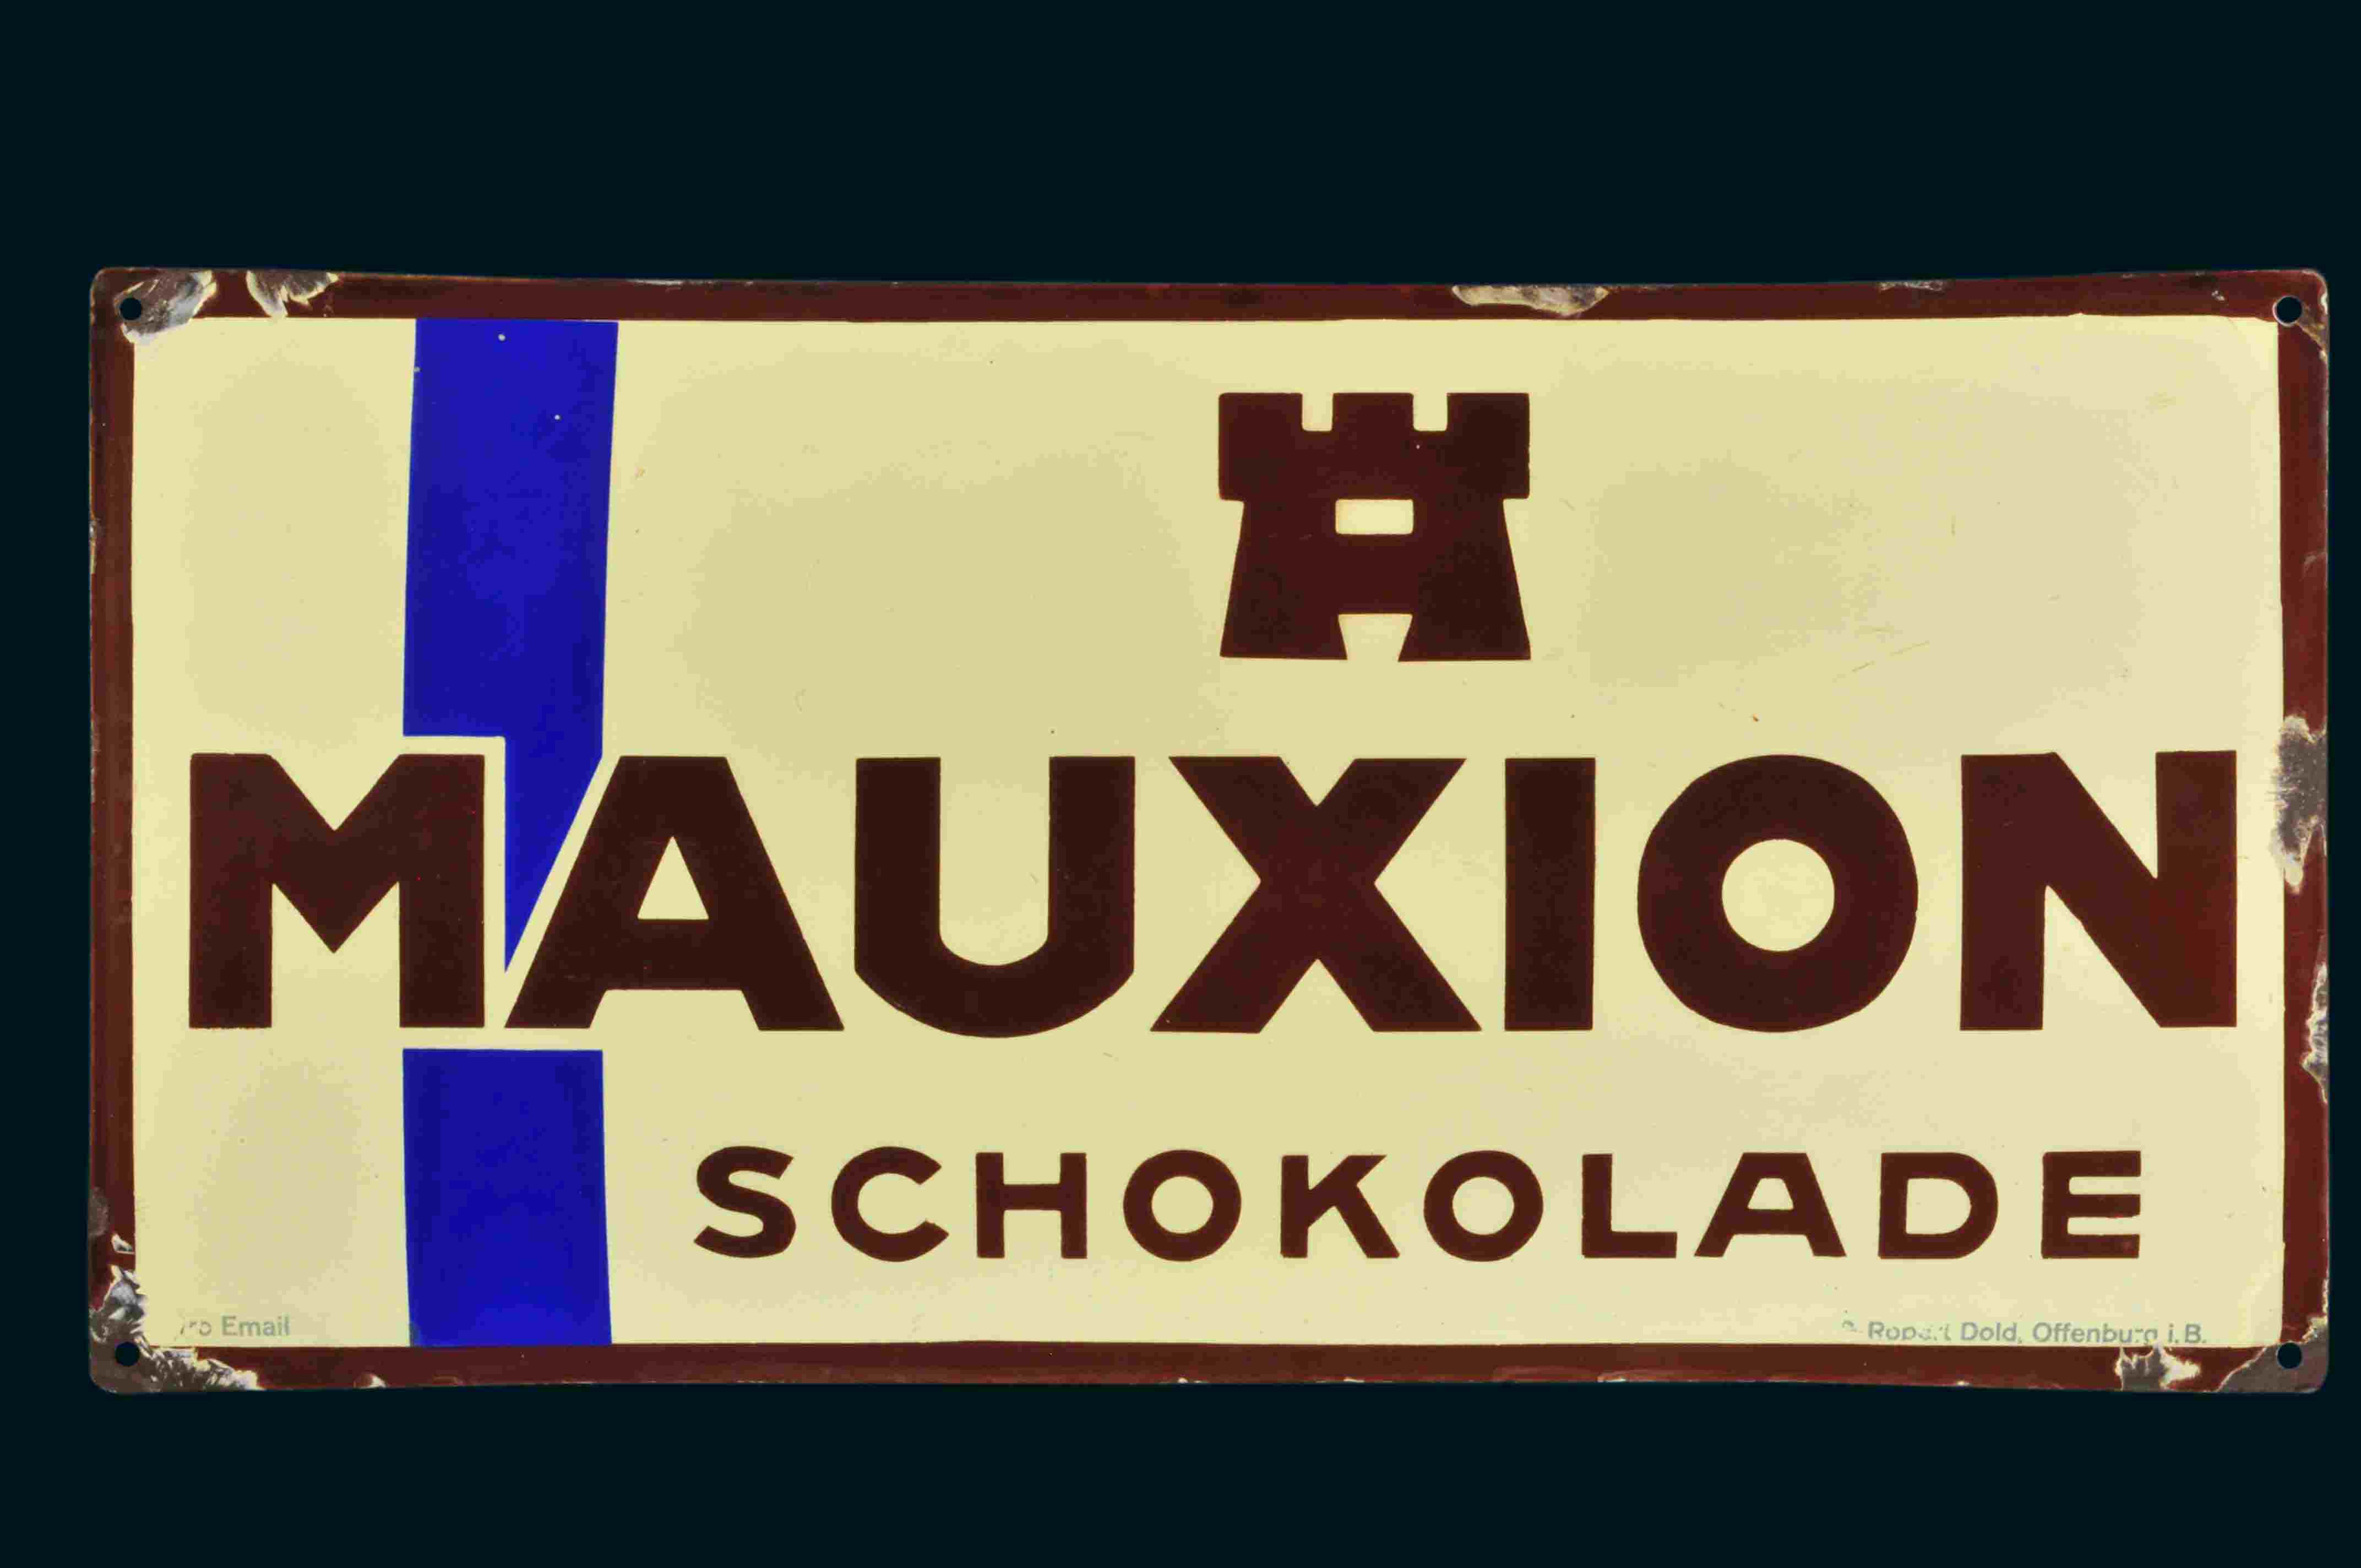 Mauxion Schokolade 